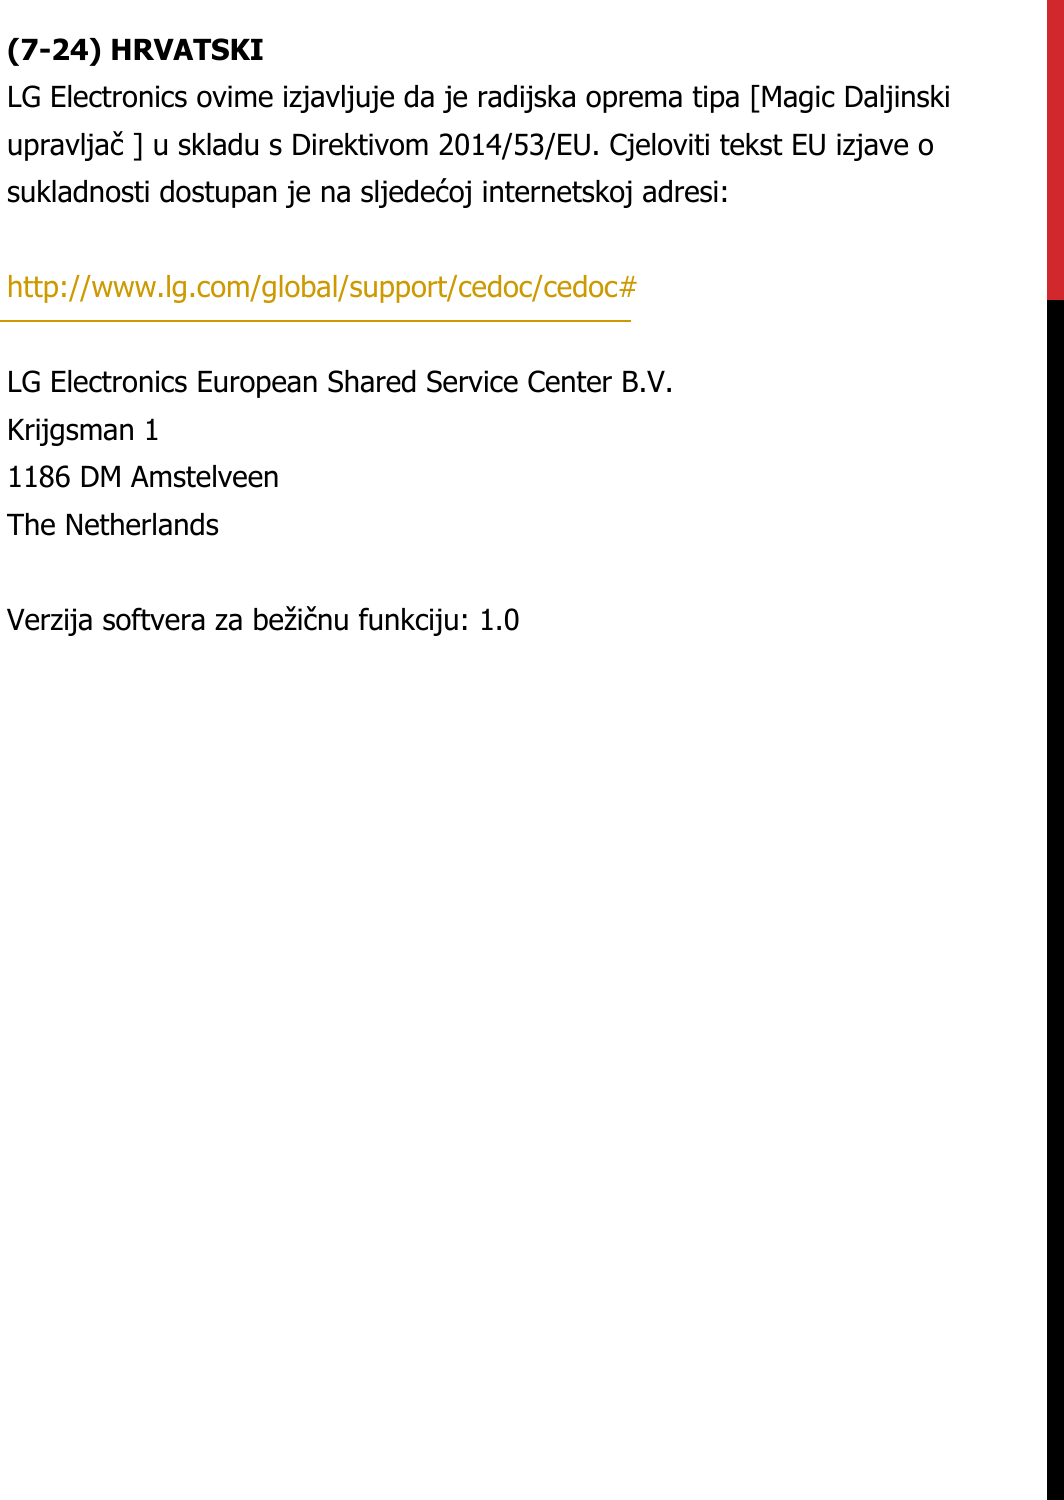 (7-24) HRVATSKILG Electronics ovime izjavljuje da je radijska oprema tipa [Magic Daljinski upravljač ] u skladu s Direktivom 2014/53/EU. Cjeloviti tekst EU izjave o sukladnosti dostupan je na sljedećoj internetskoj adresi:   http://www.lg.com/global/support/cedoc/cedoc#   LG Electronics European Shared Service Center B.V.  Krijgsman 1  1186 DM Amstelveen  The Netherlands   Verzija softvera za bežičnu funkciju: 1.0